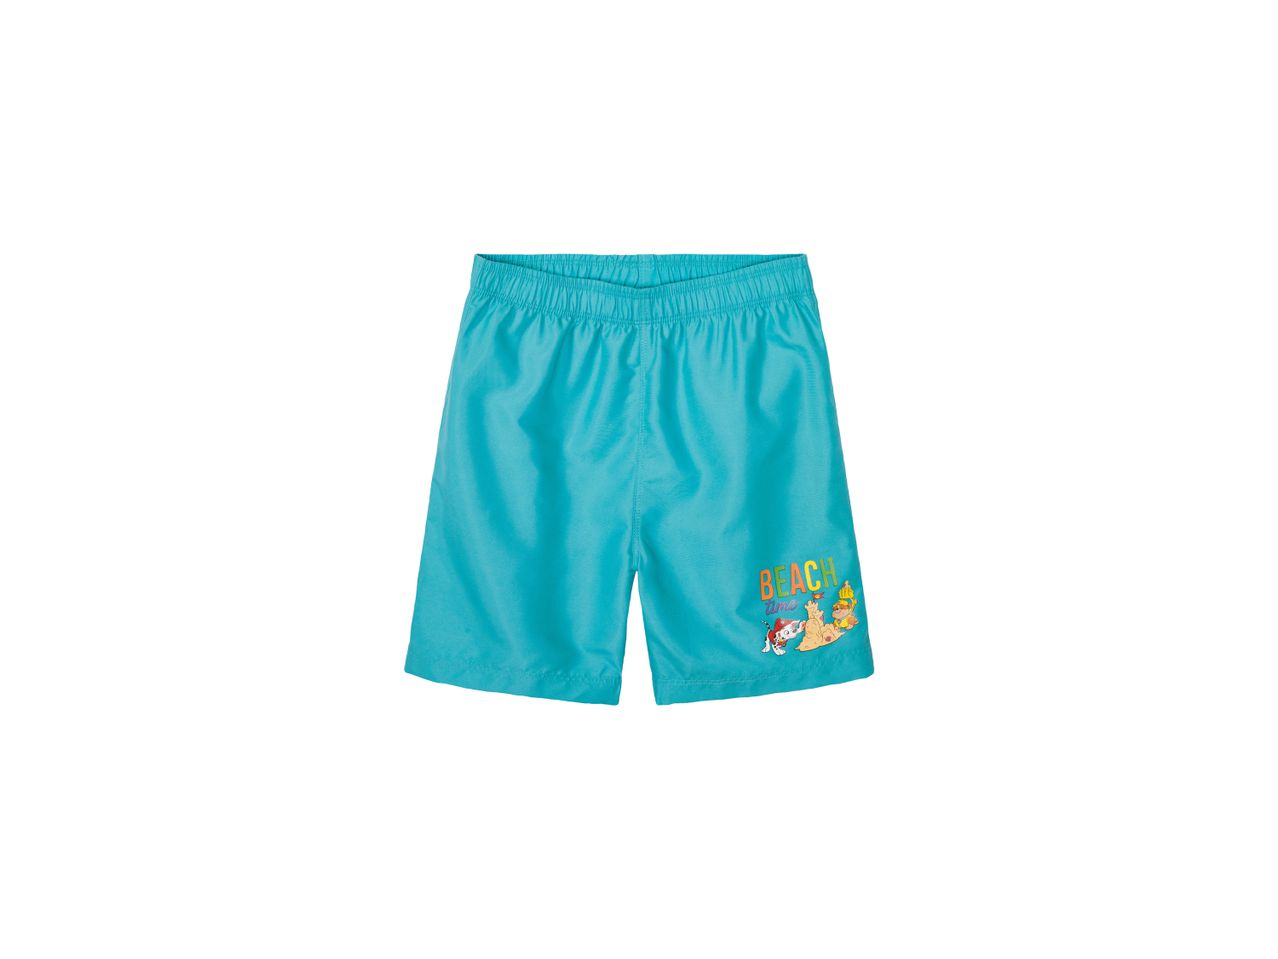 Shorts mare da bambino Minions, Paw , prezzo 6.99 EUR